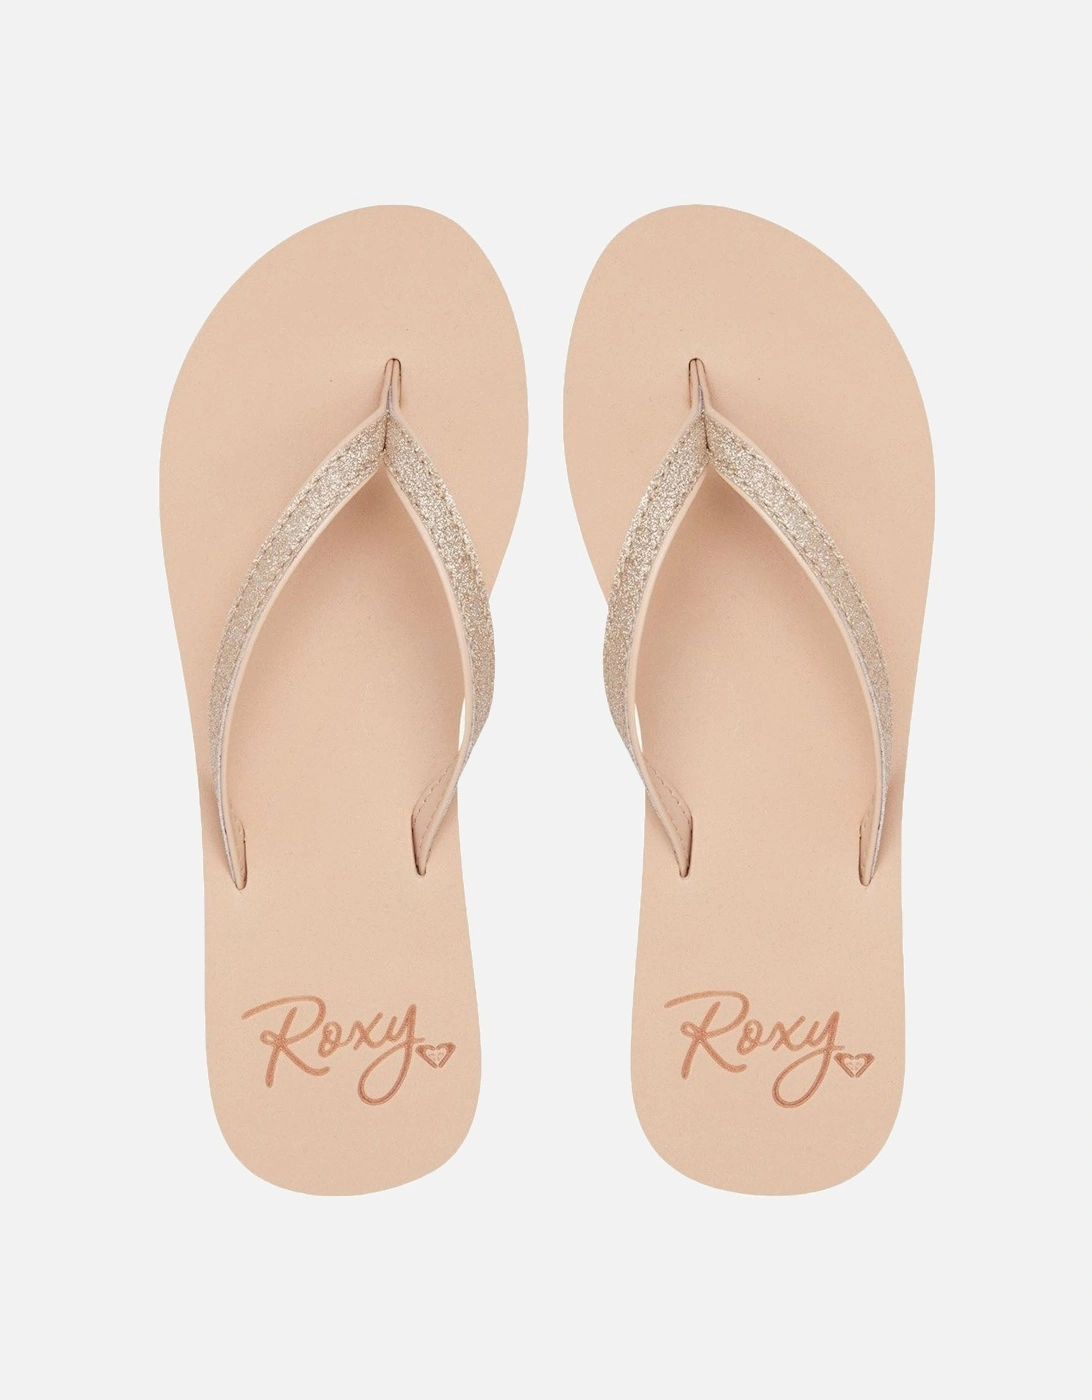 Womens Napili Summer Glitter Sandals Flip Flops